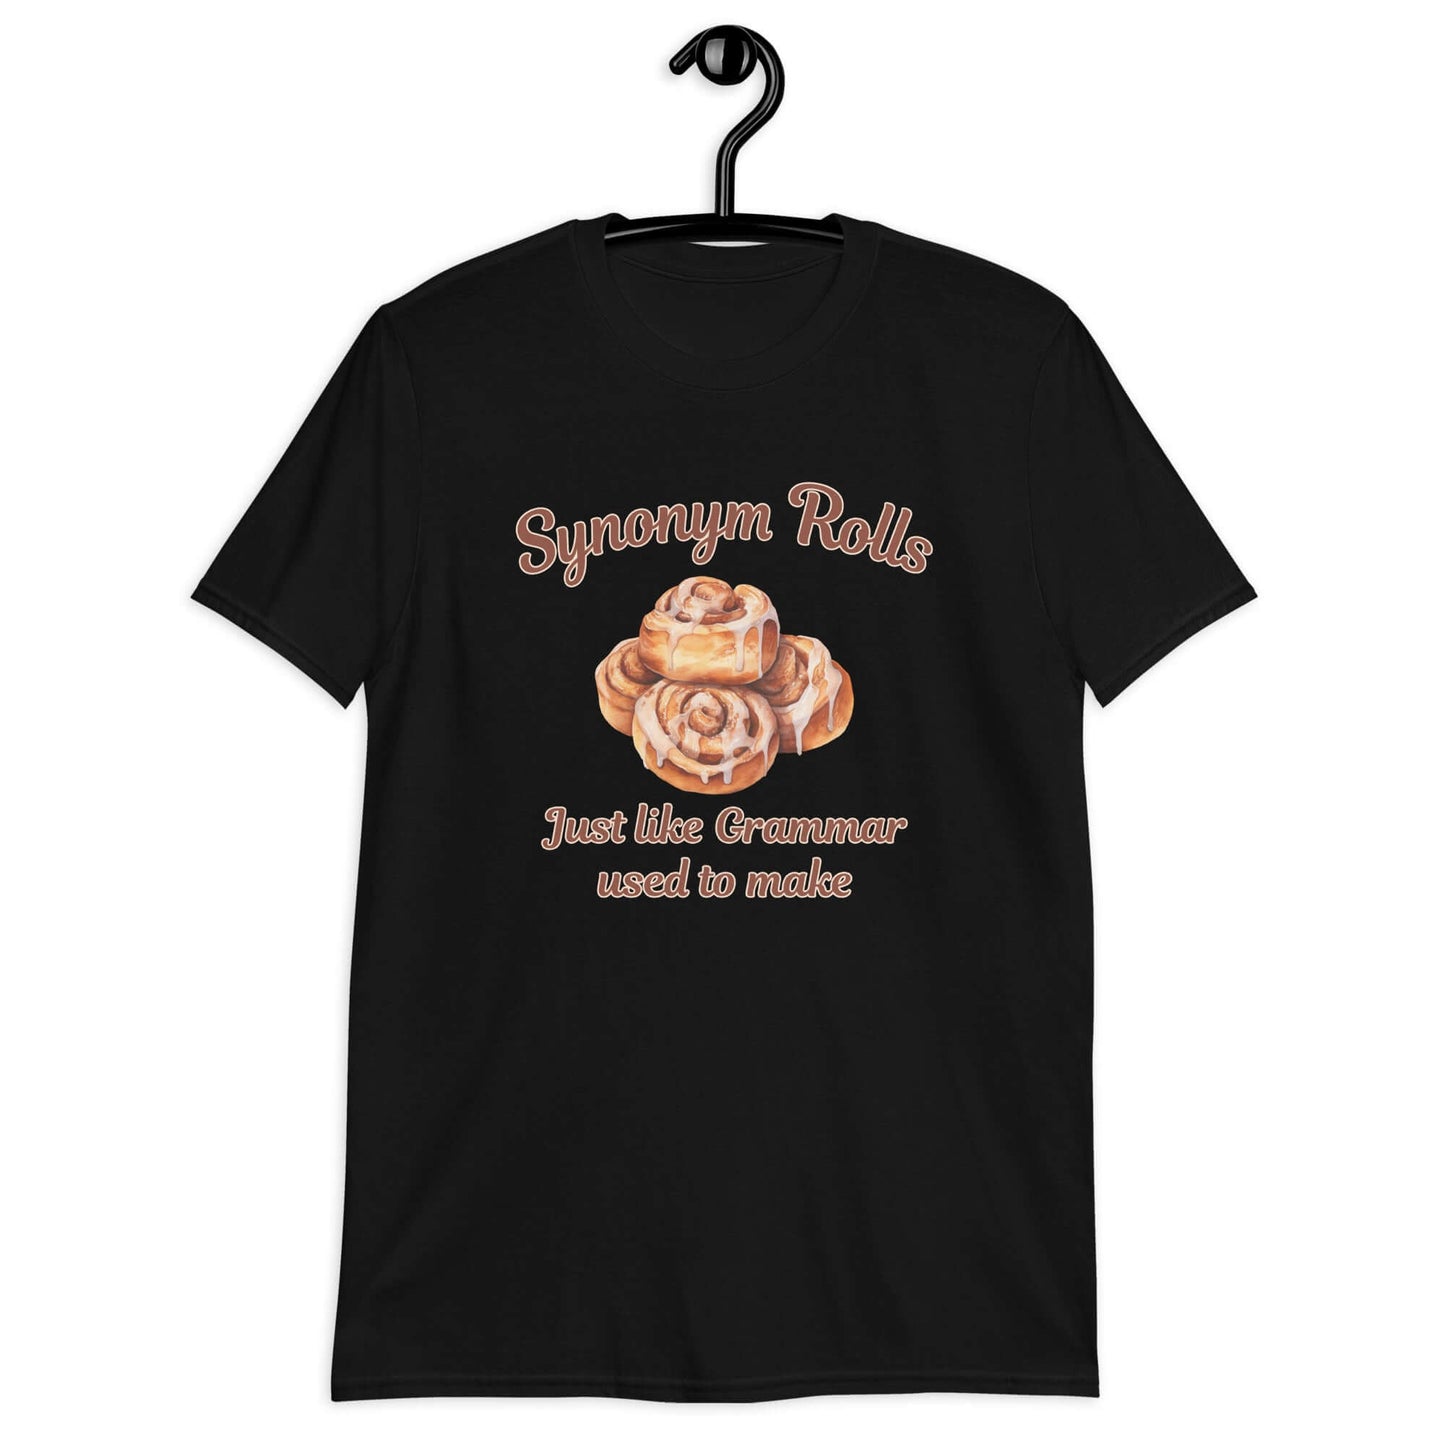 Cinnamon synonym rolls gramma grammar funny t-shirt